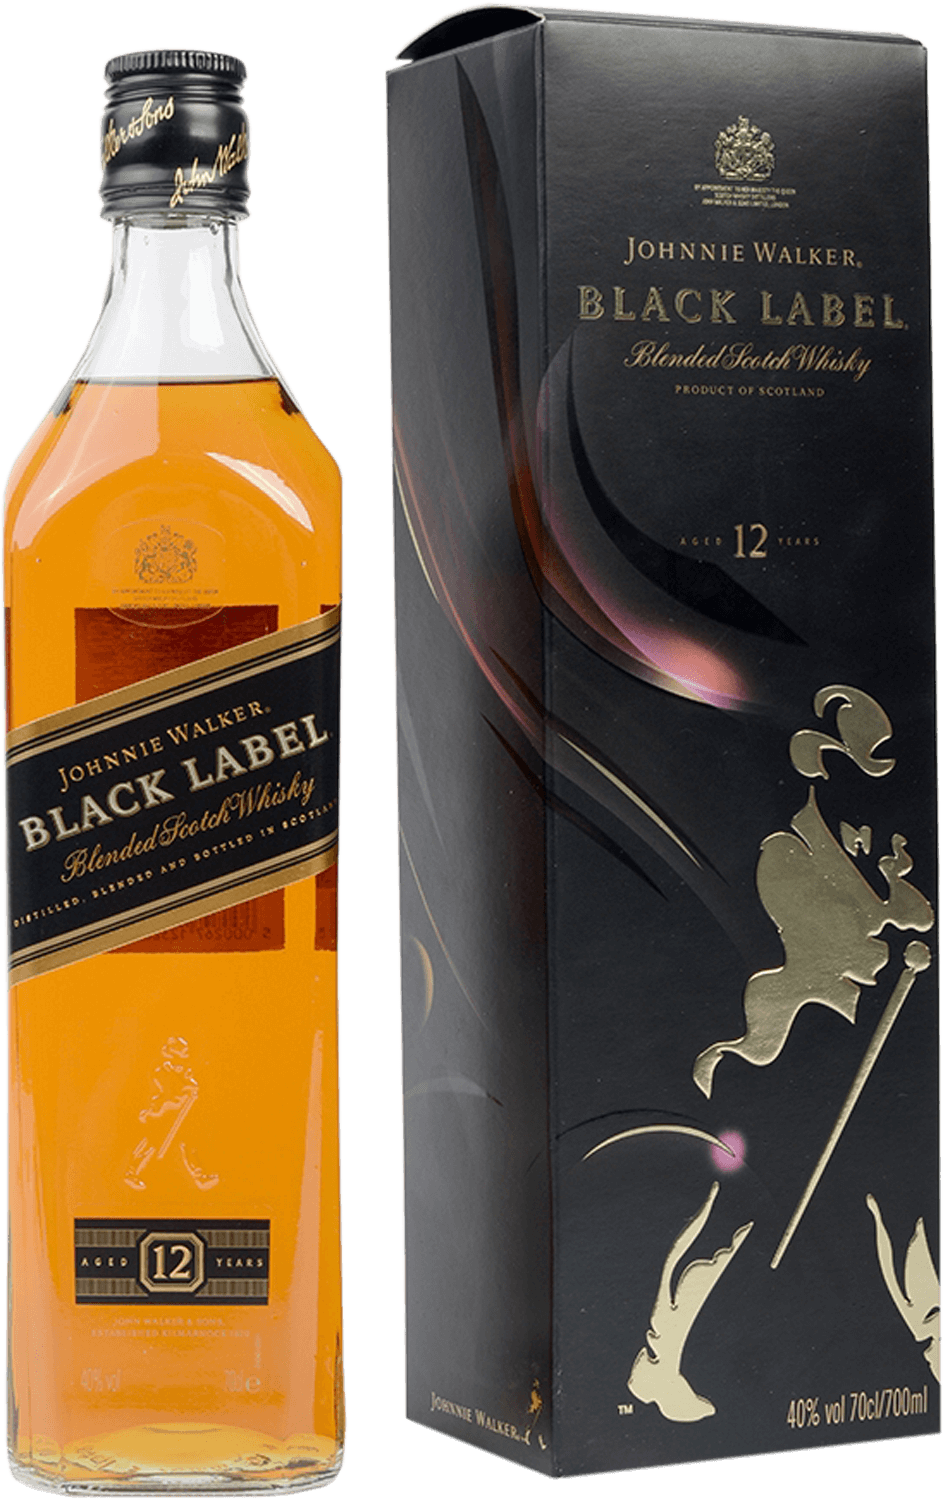 Johnnie Walker Black Label Blended Scotch Whisky (gift box) johnnie walker black label blended scotch whisky gift box